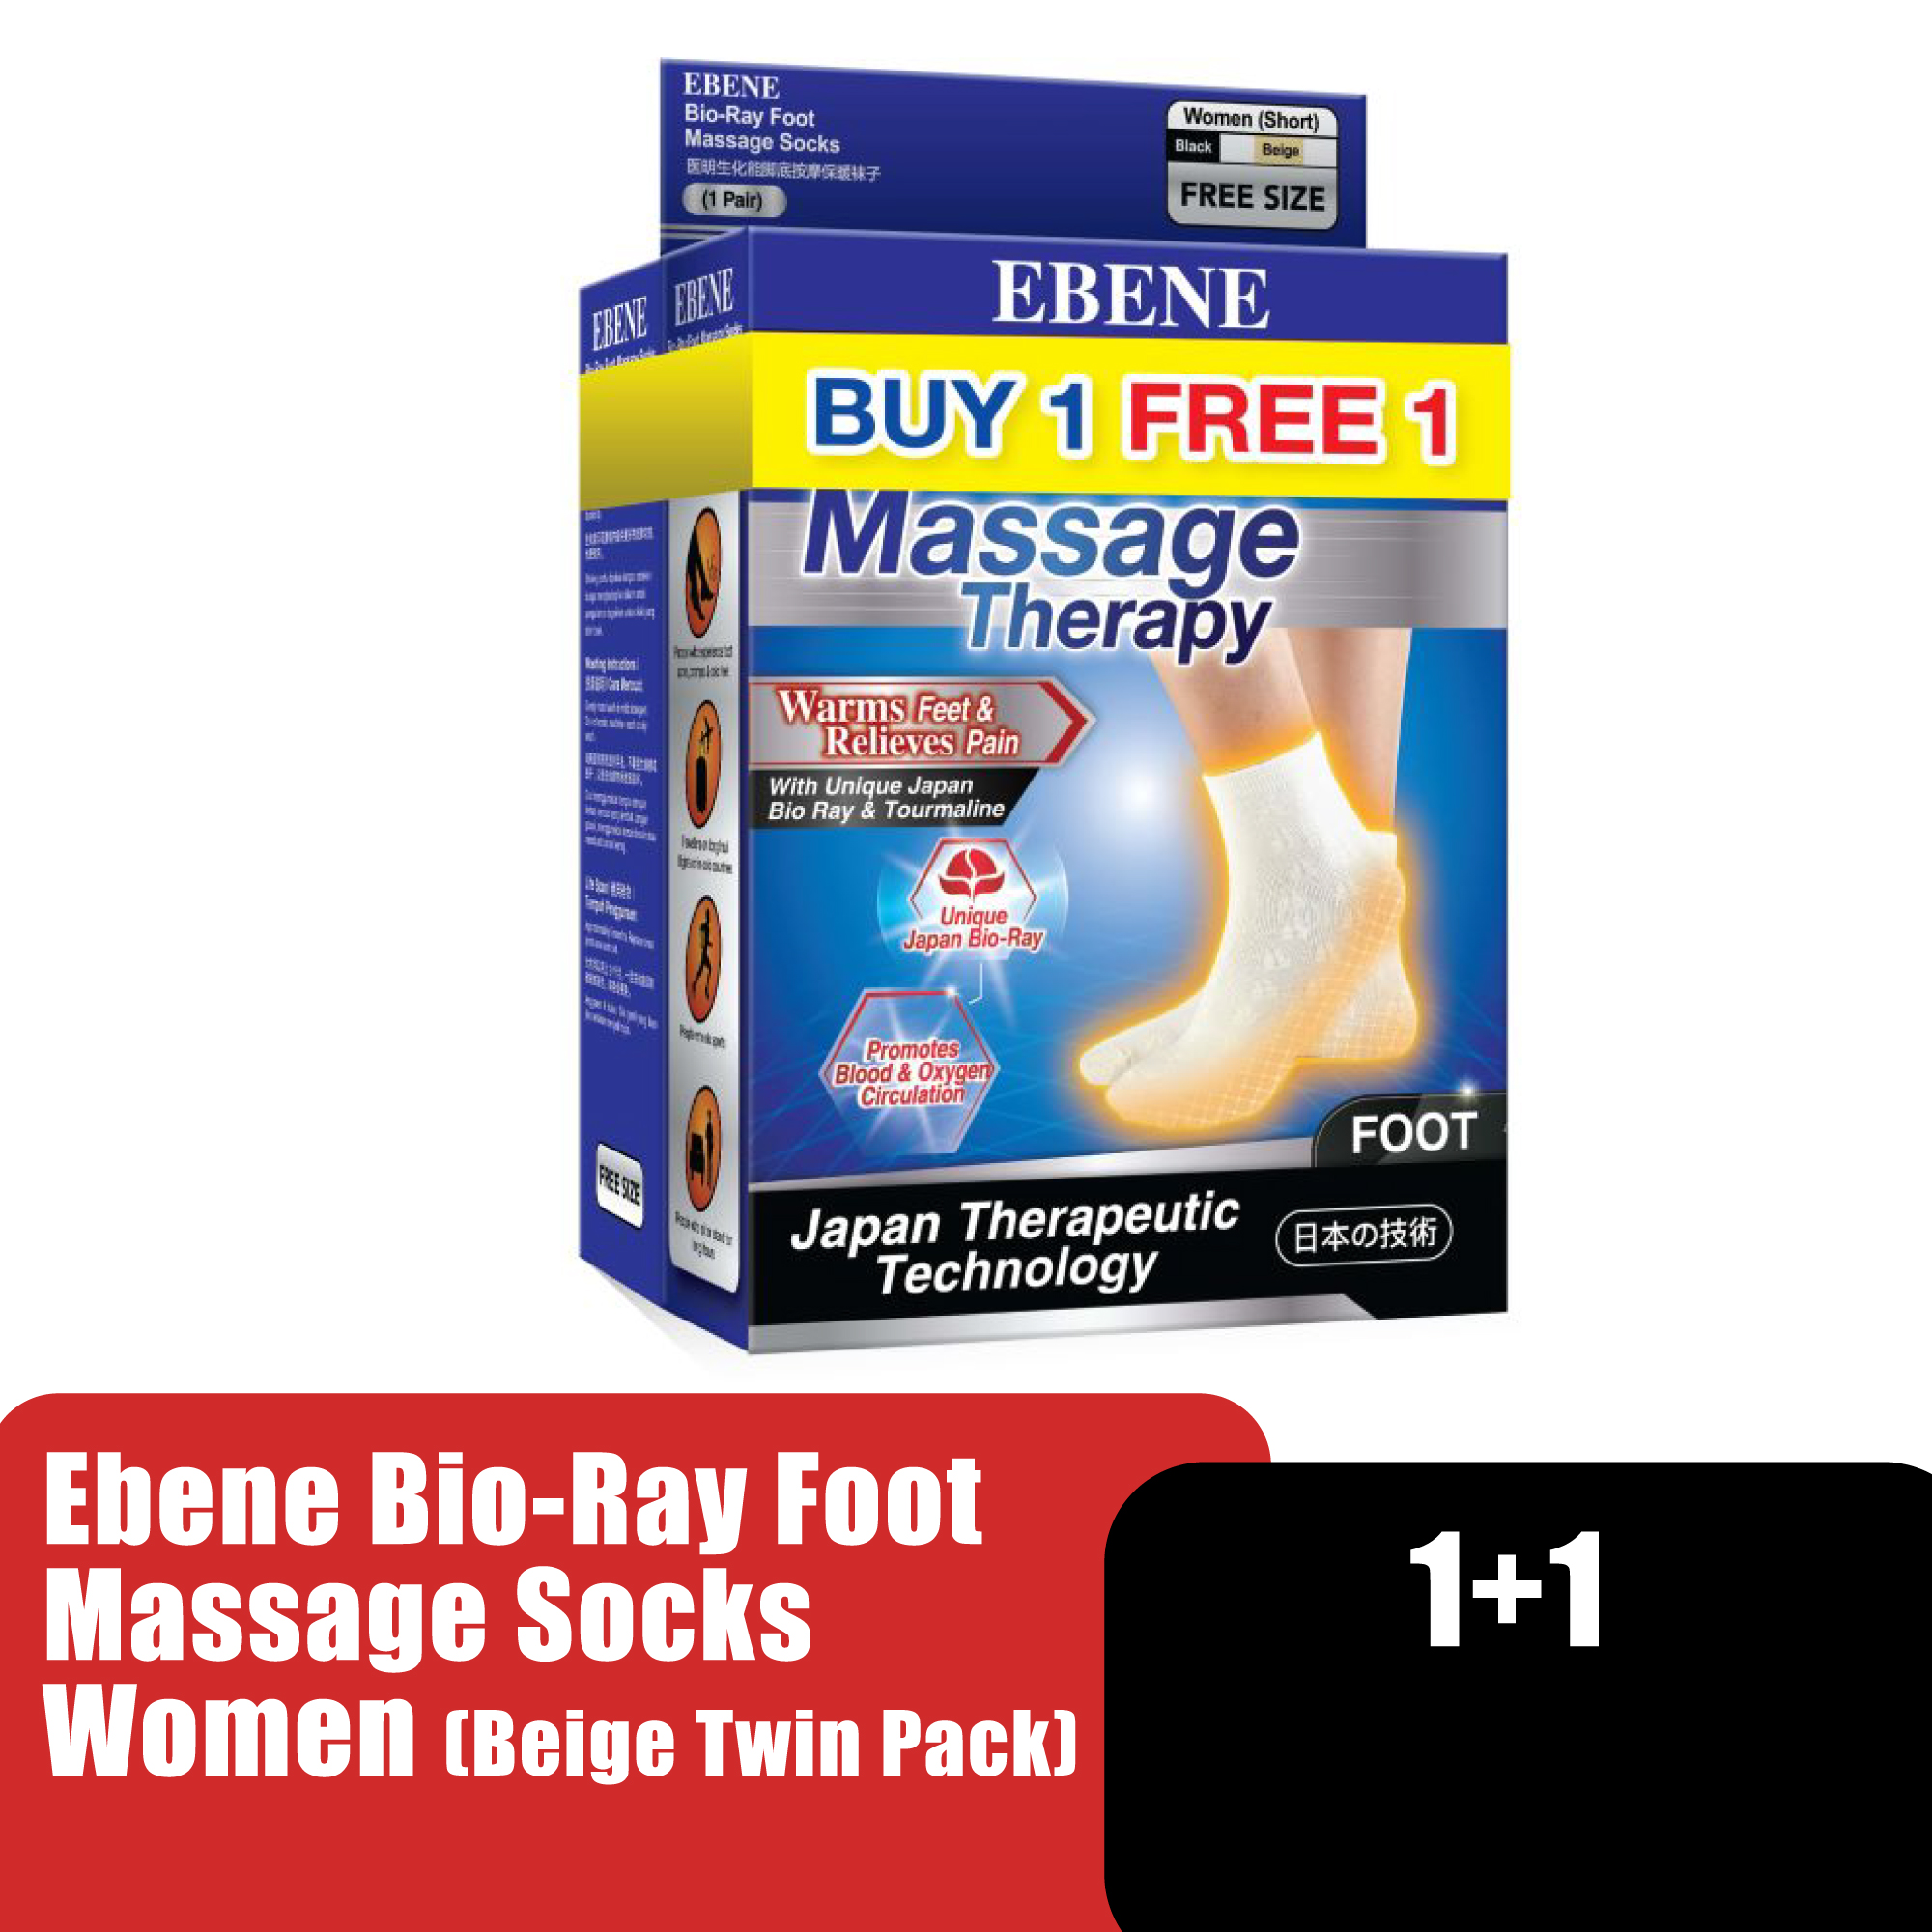 Ebene Bio-Ray Foot Massage Socks Women - Beige Twin Pack (Free Size)